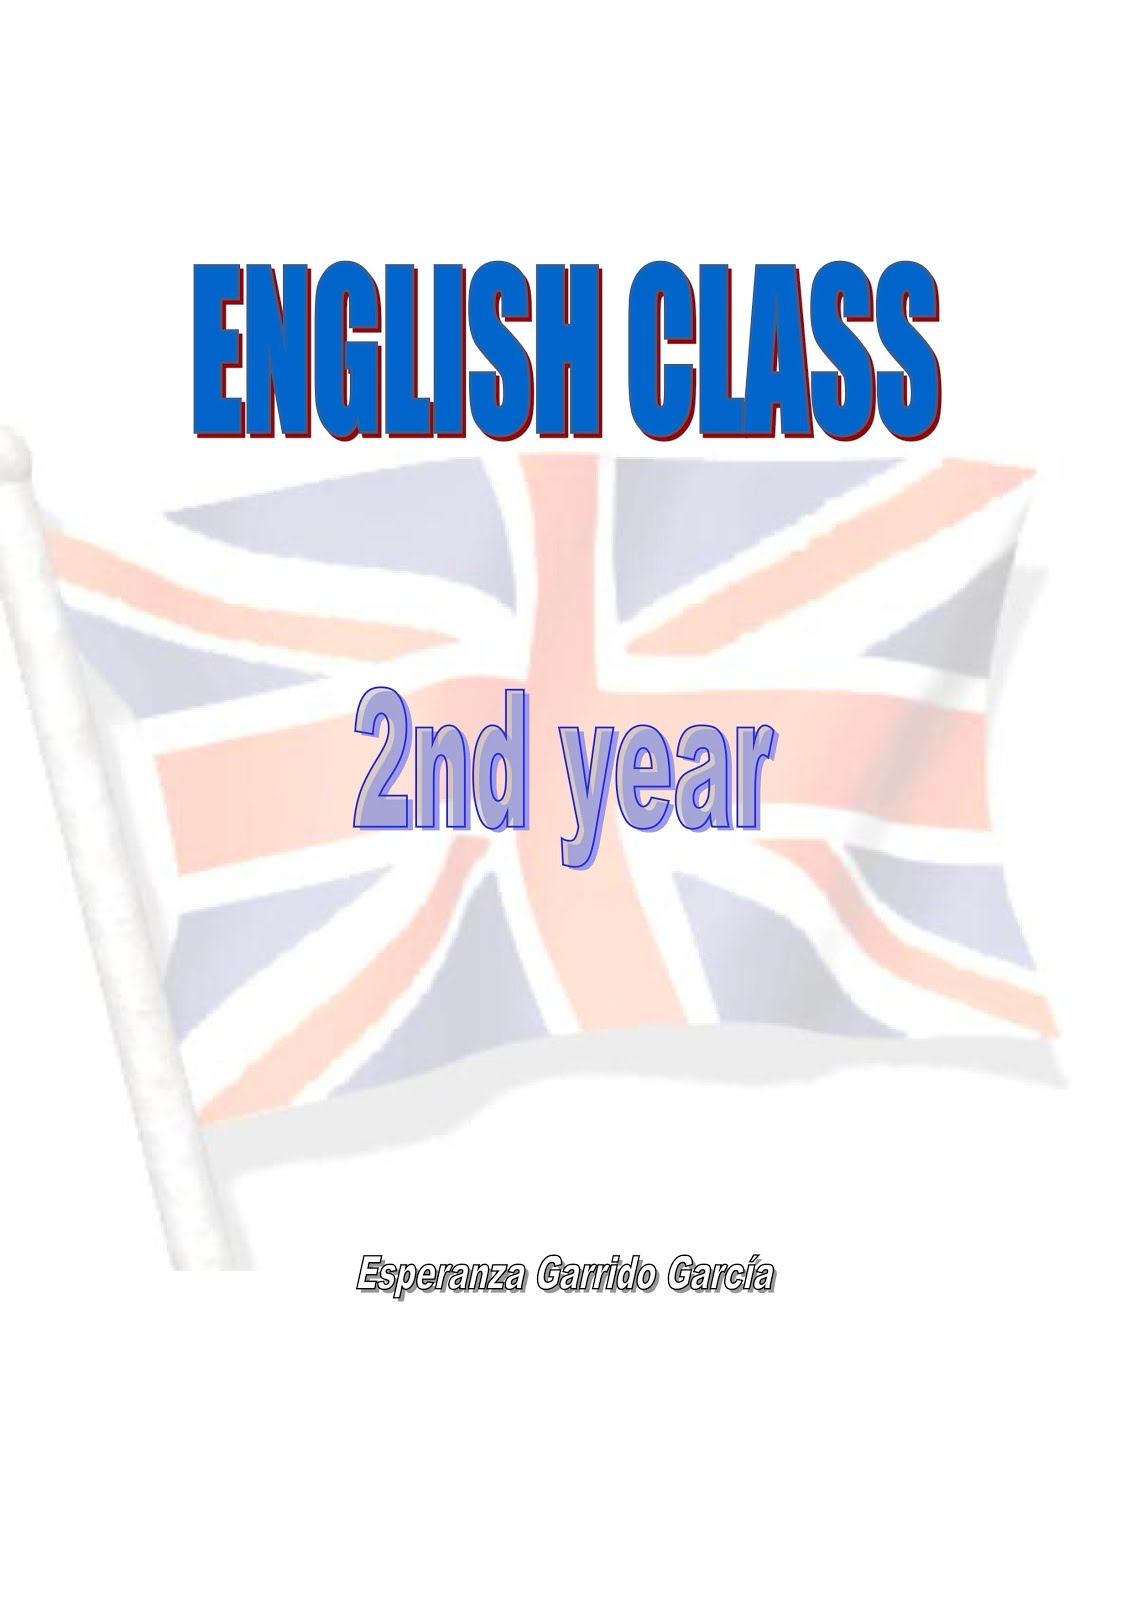 English class 2nd year